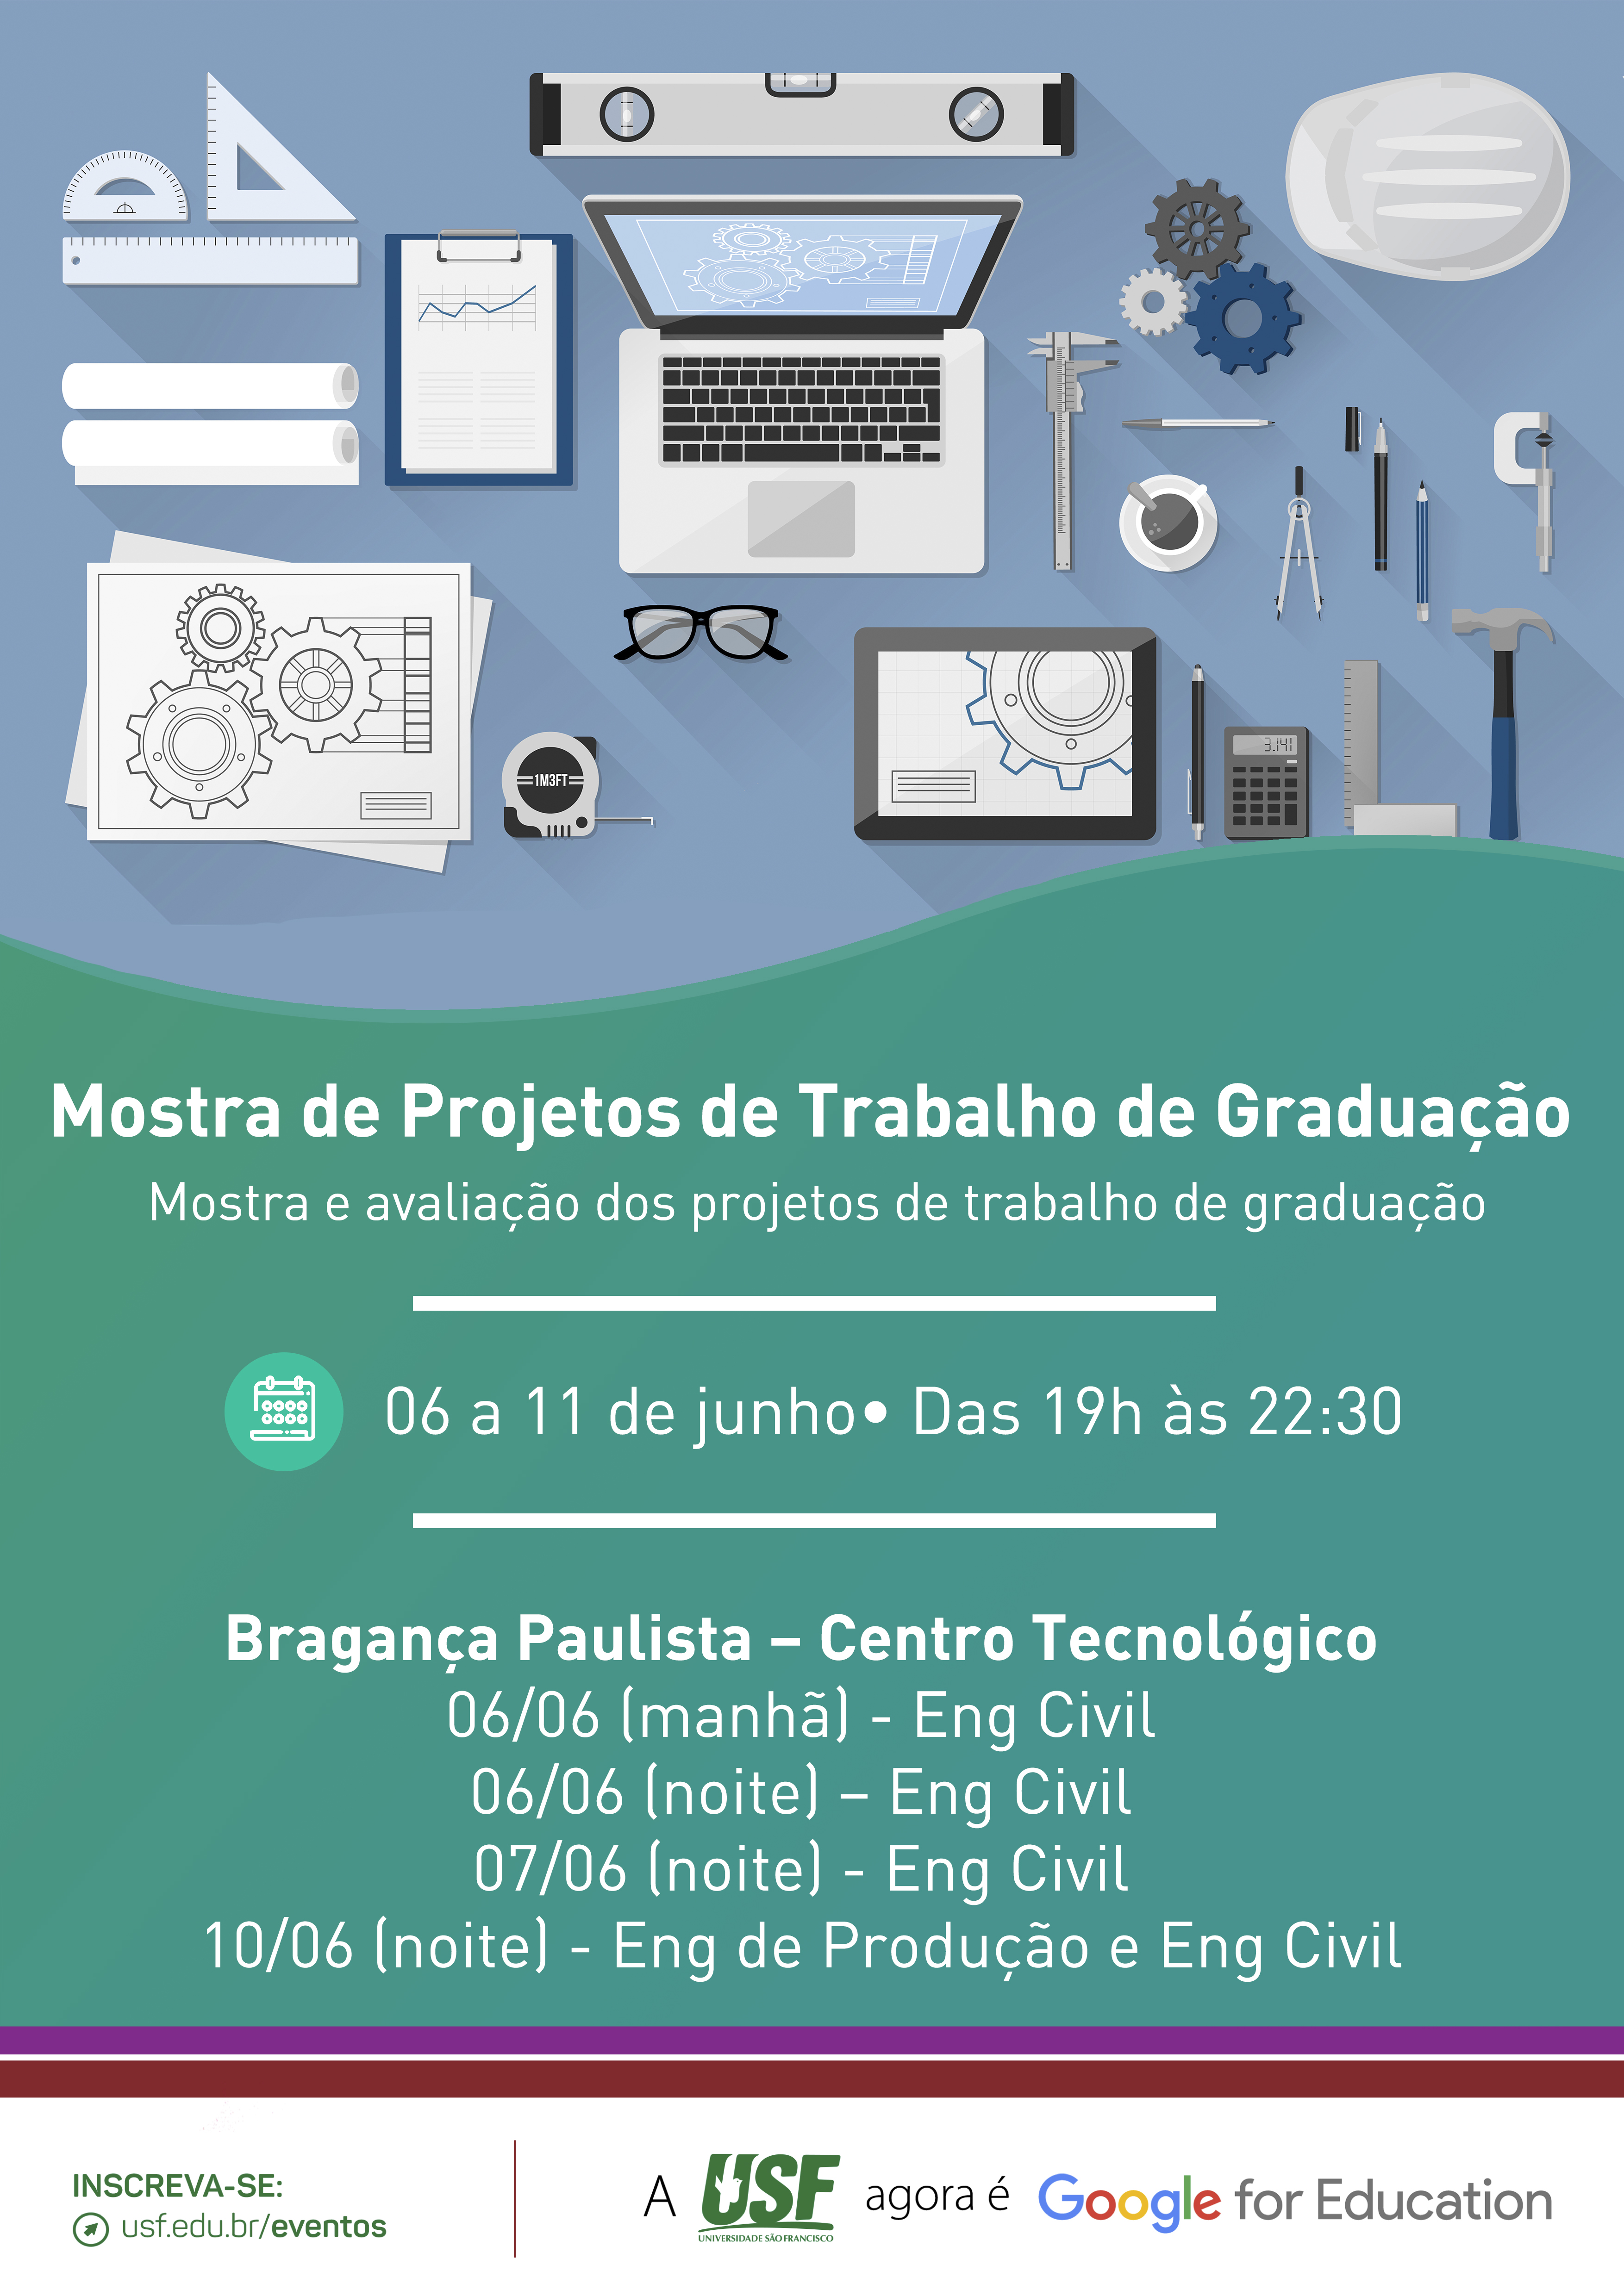 Mostra de Projetos de Trabalho de Graduação no Câmpus Bragança Paulista